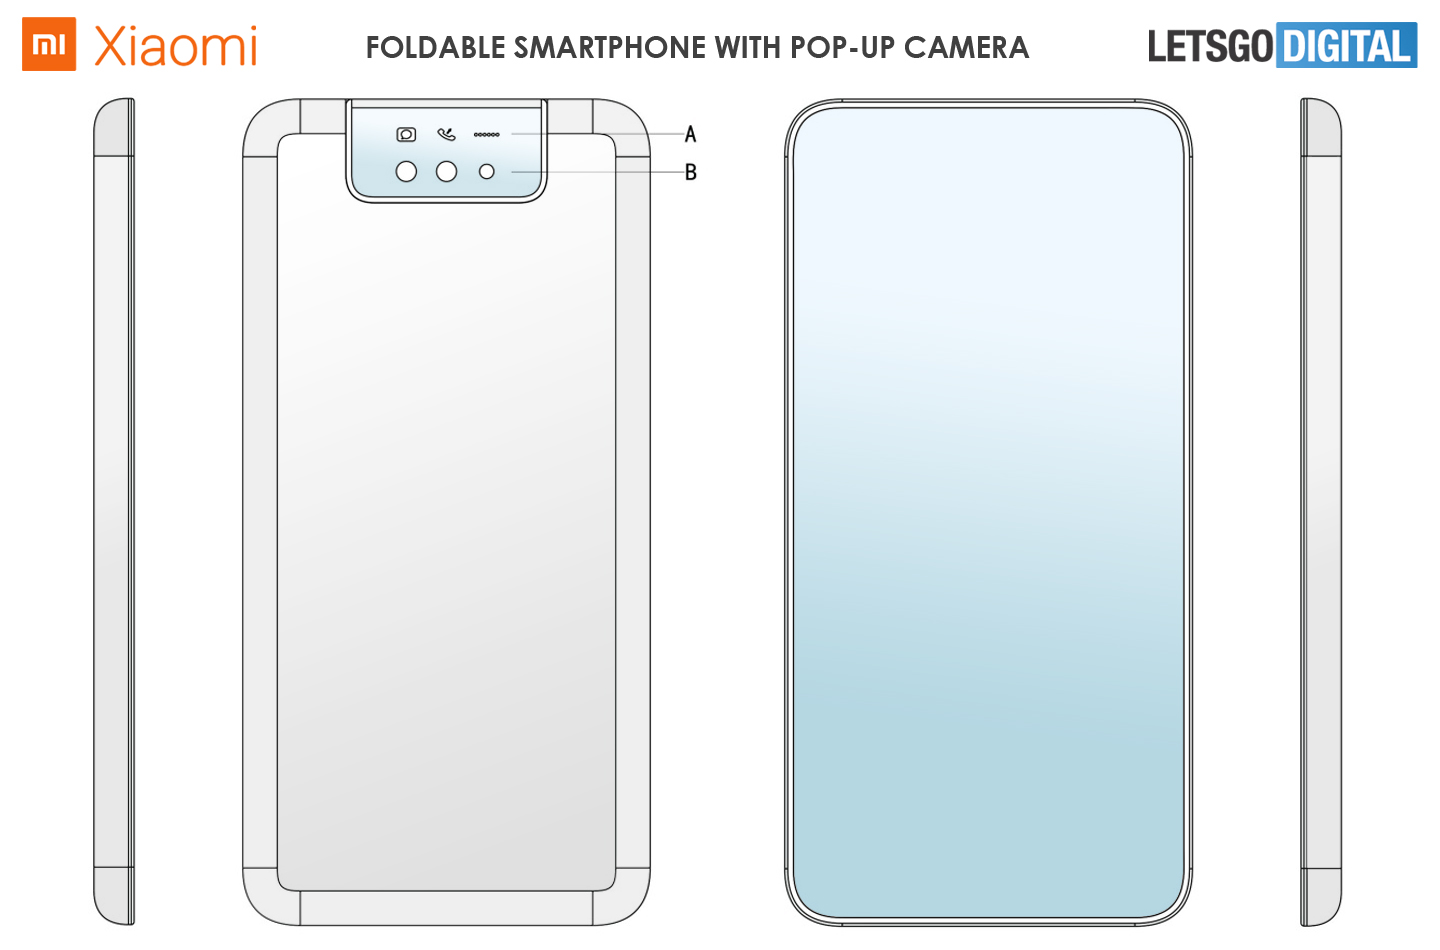 Xiaomi đăng ký bằng
sáng chế mới với chiếc smartphone màn hình gập có camera
pop-up